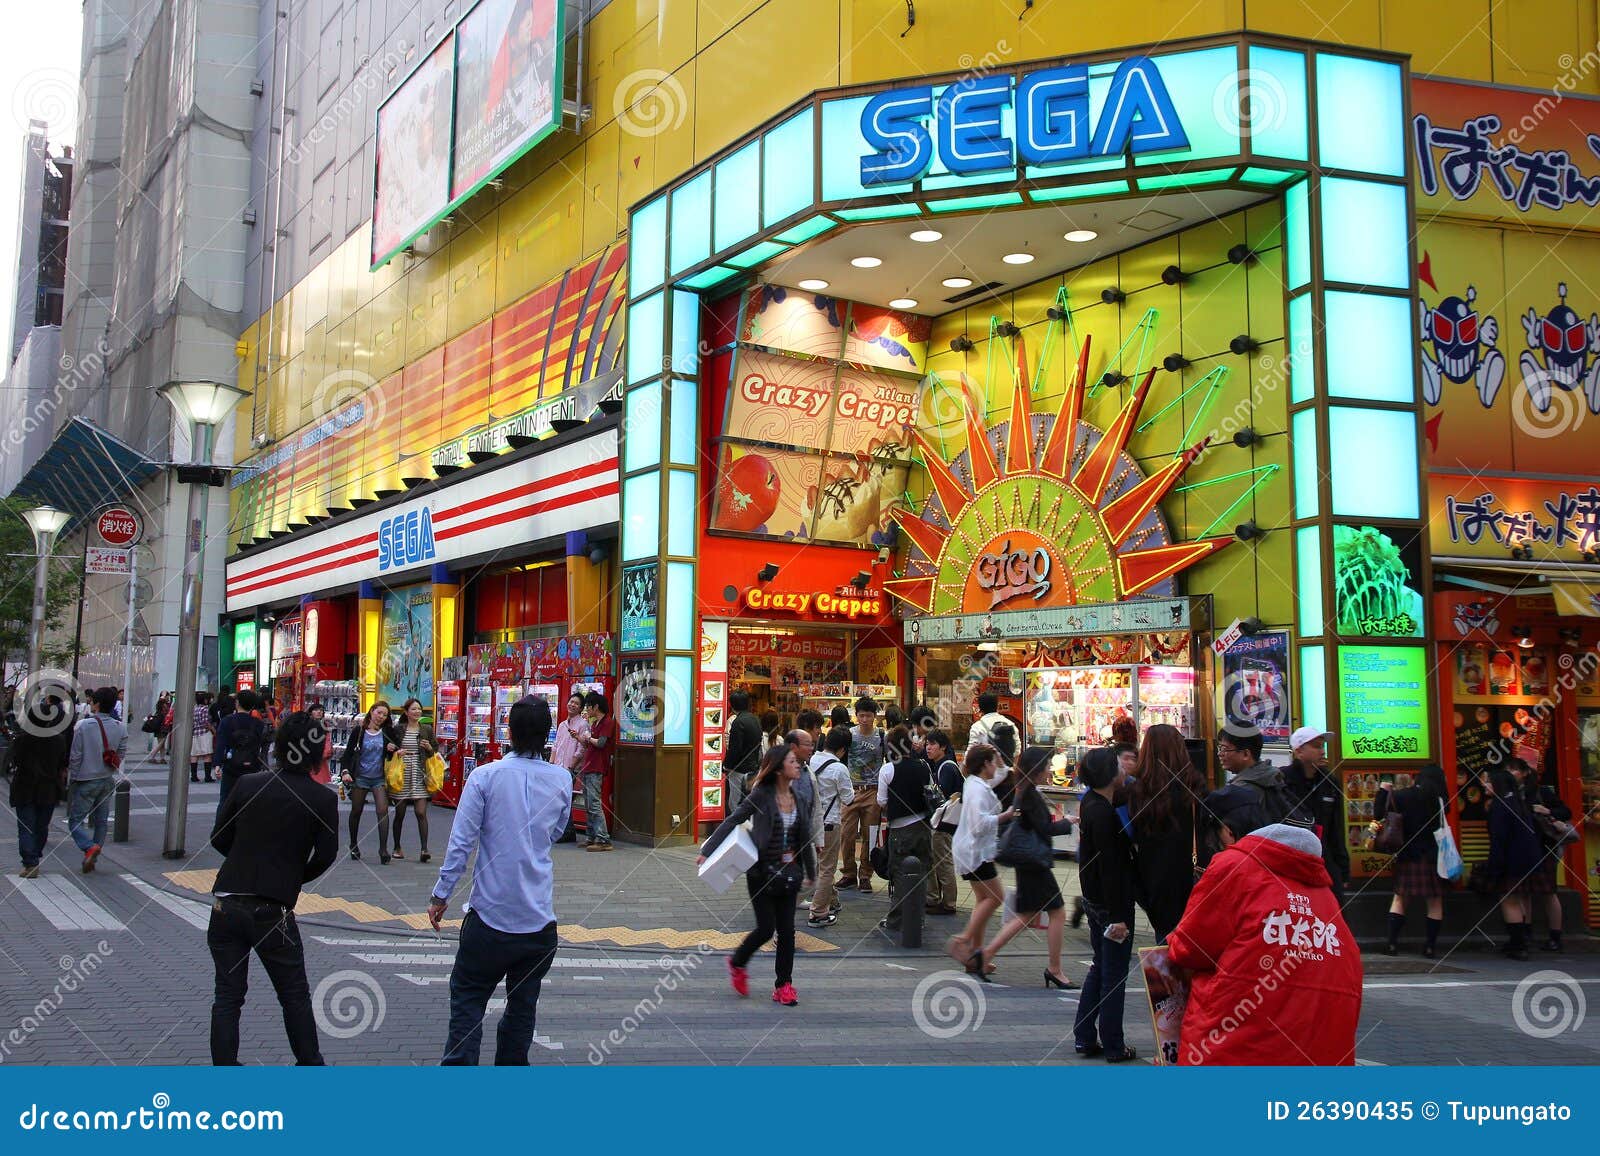 Sega Ikebukuro Photos Free Royalty Free Stock Photos From Dreamstime